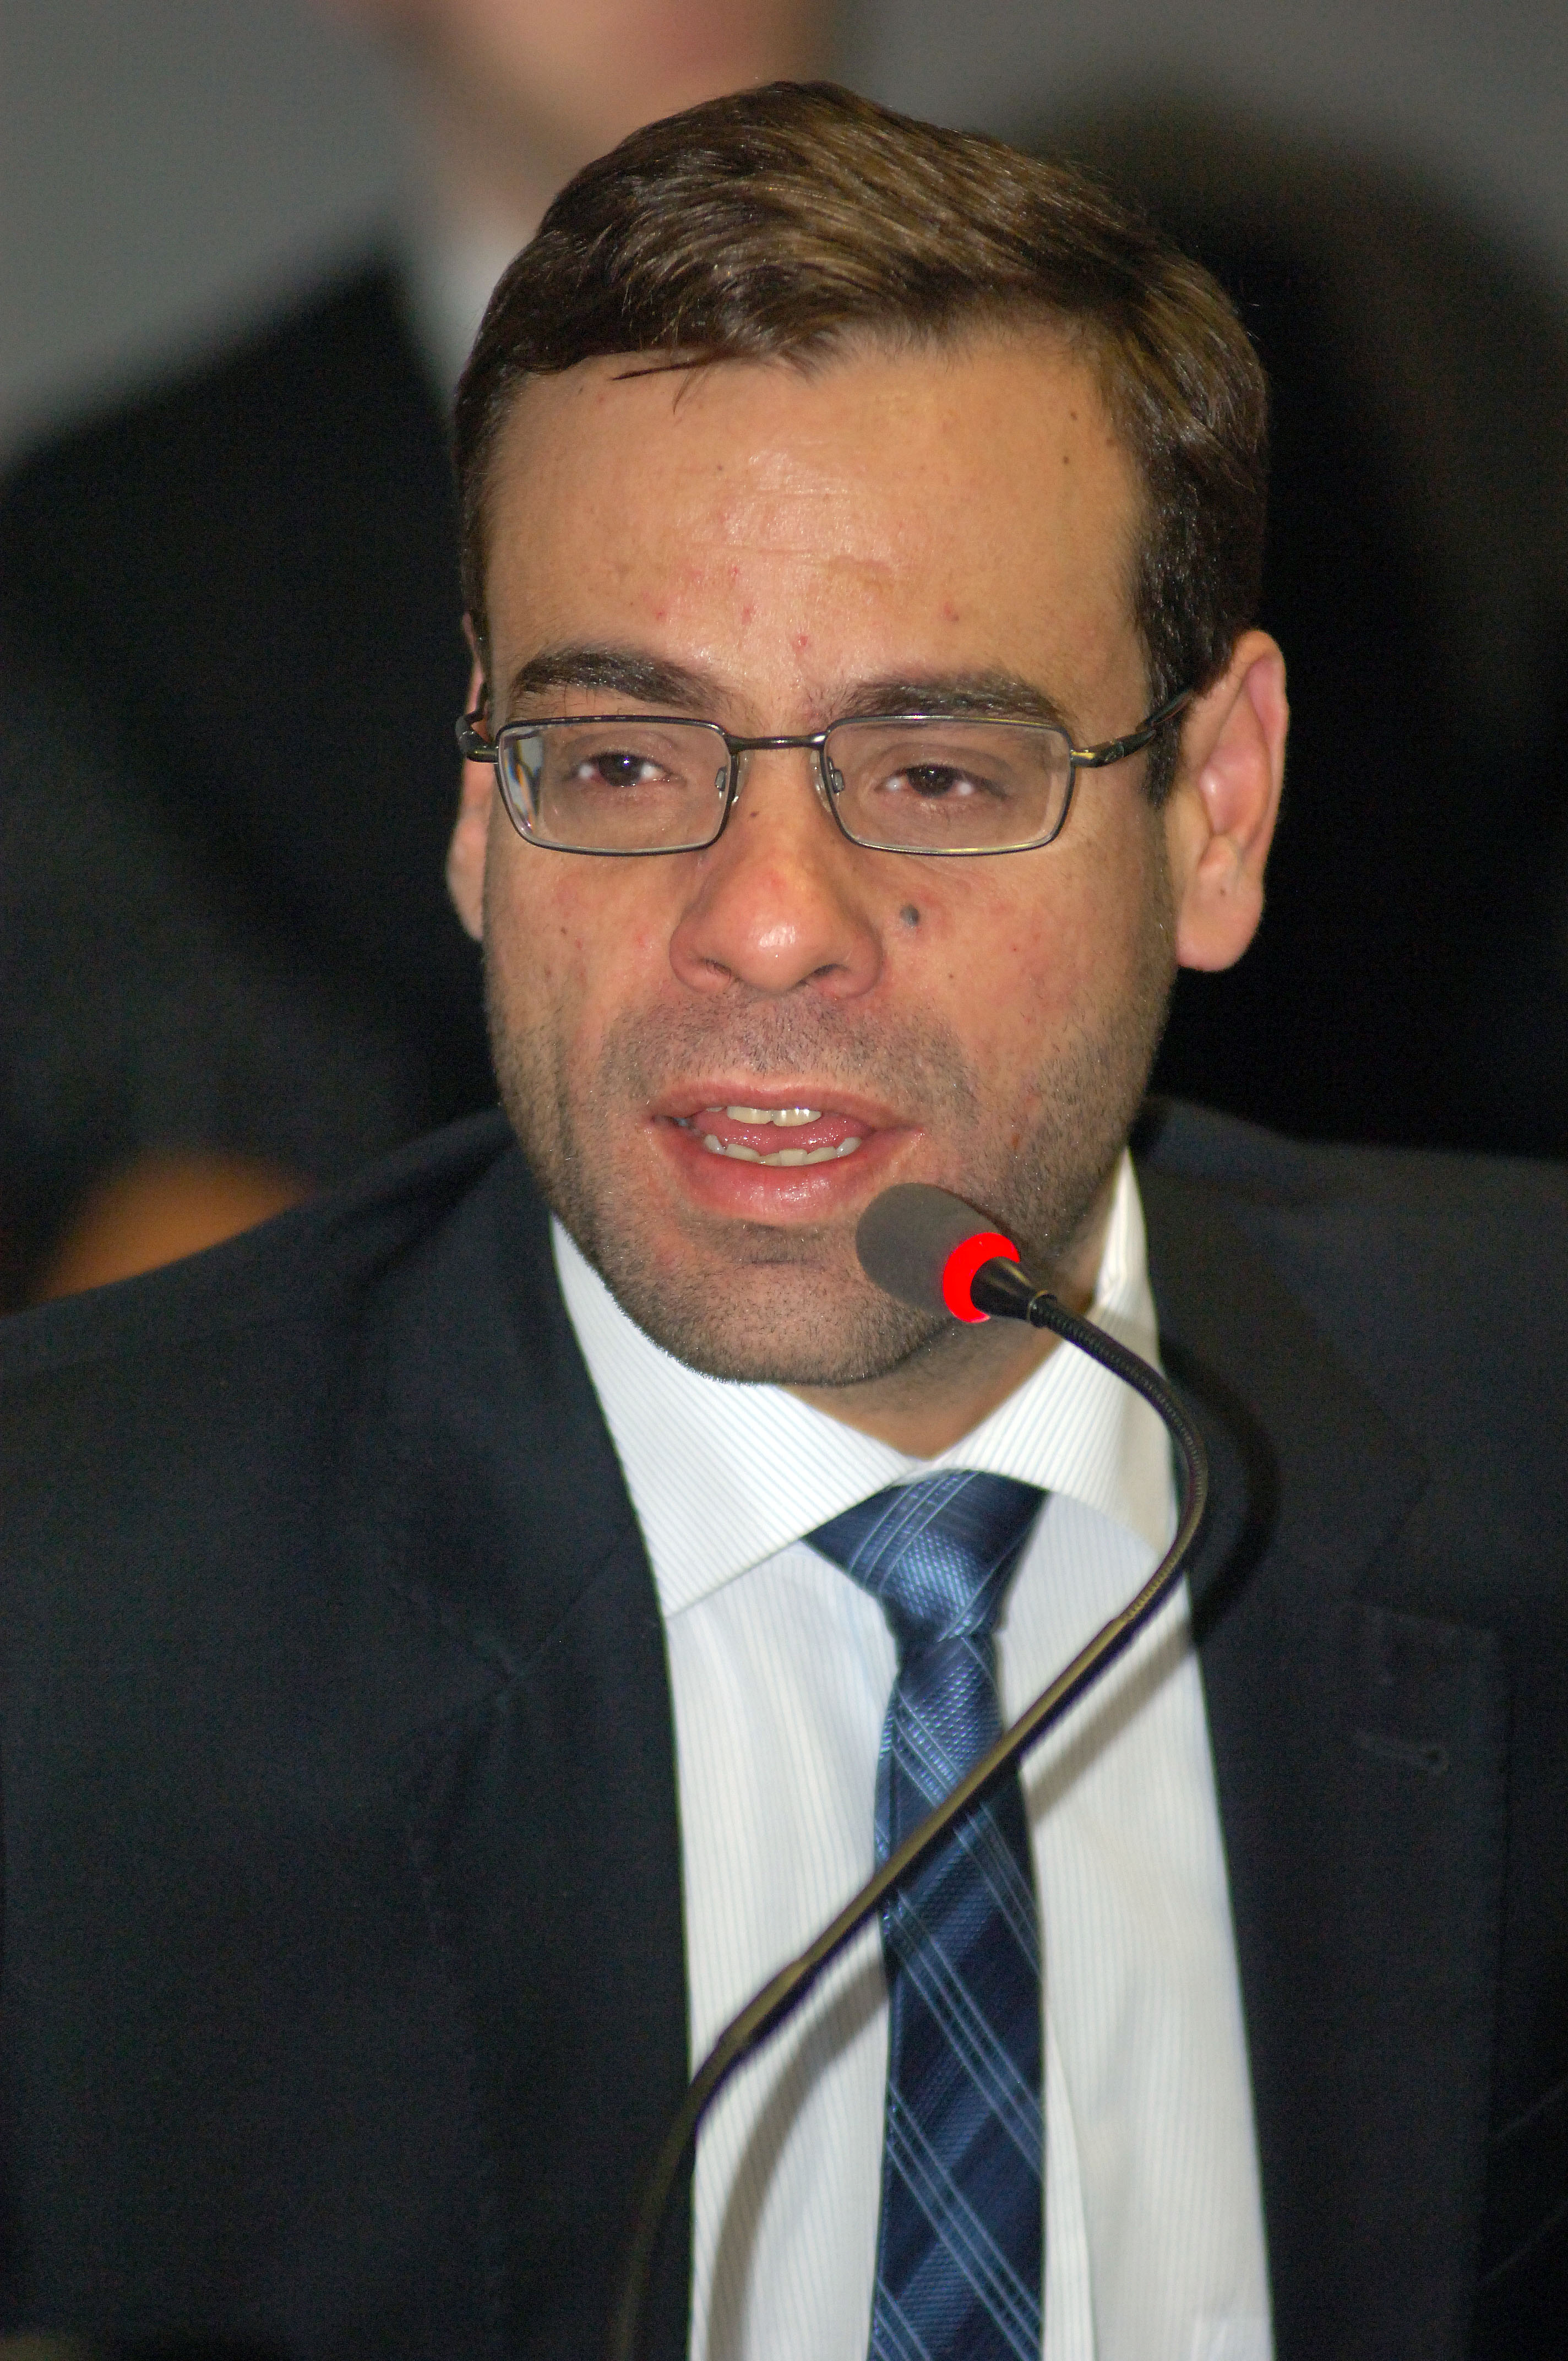 Ministro do trabalho e emprego Brizola Neto durante reuniao do conselho curador do fgts.